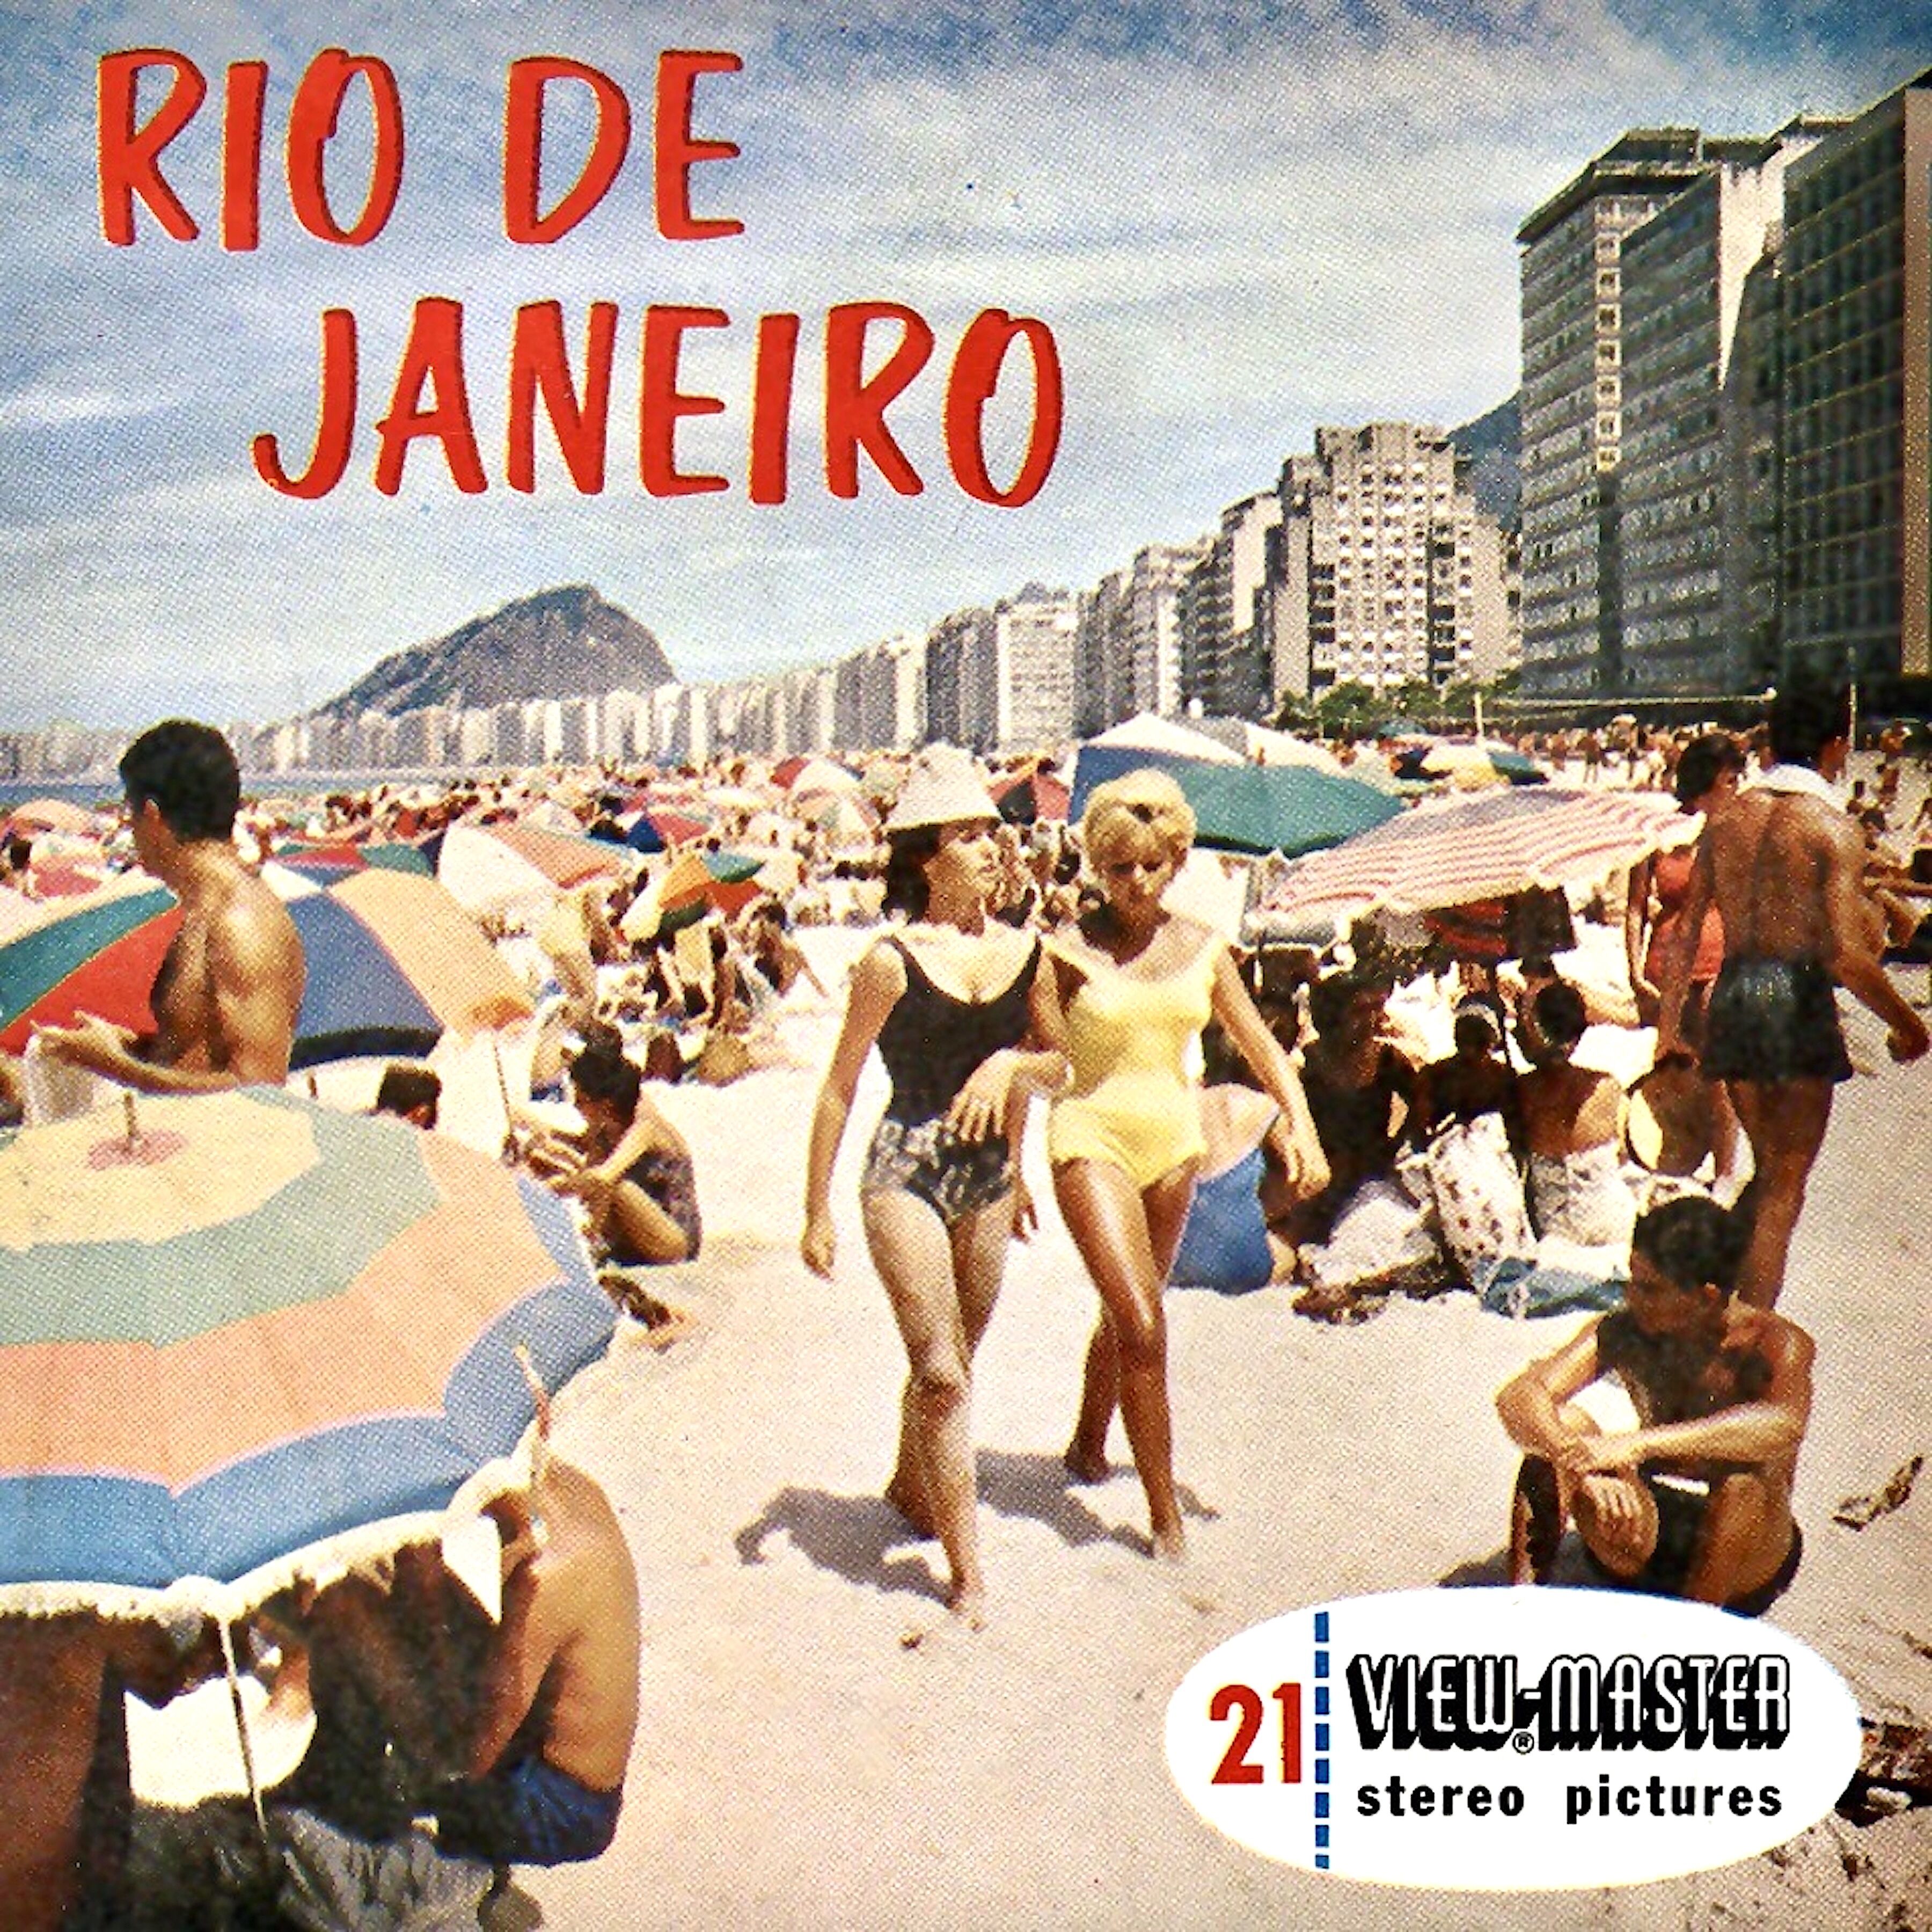 Antonio Carlos Jobim - Sinfonia Do Rio De Janeiro: A Montanha, O Sol, O Mar (Sinfonia Popular Em Tempo De Samba) (2022) [FLAC 24bit/96kHz] Download